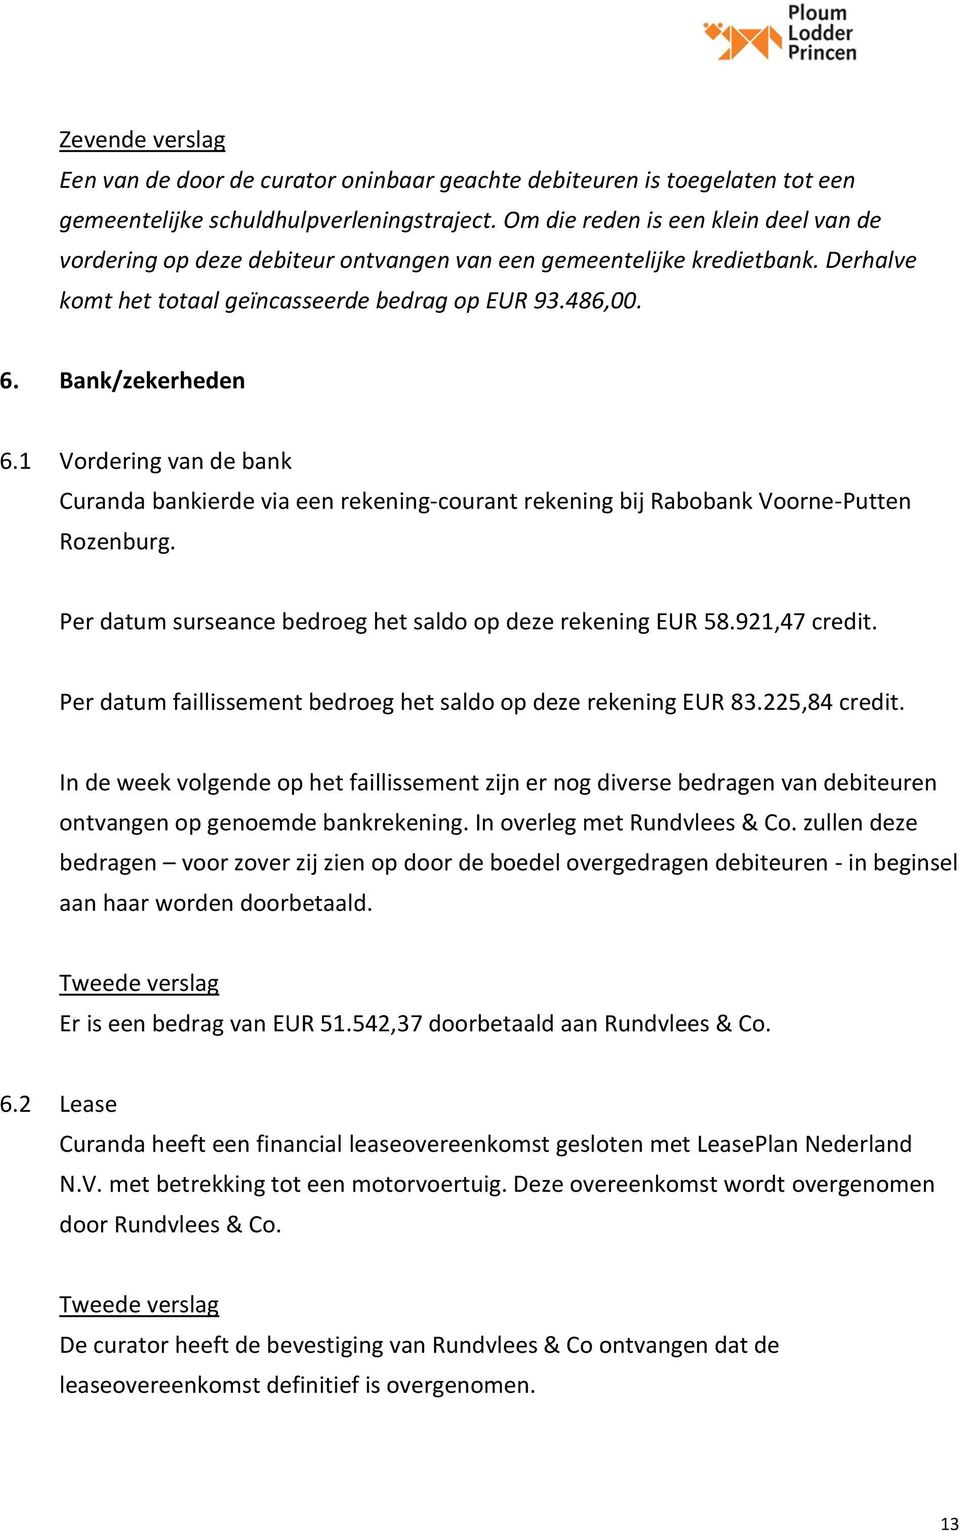 1 Vordering van de bank Curanda bankierde via een rekening-courant rekening bij Rabobank Voorne-Putten Rozenburg. Per datum surseance bedroeg het saldo op deze rekening EUR 58.921,47 credit.